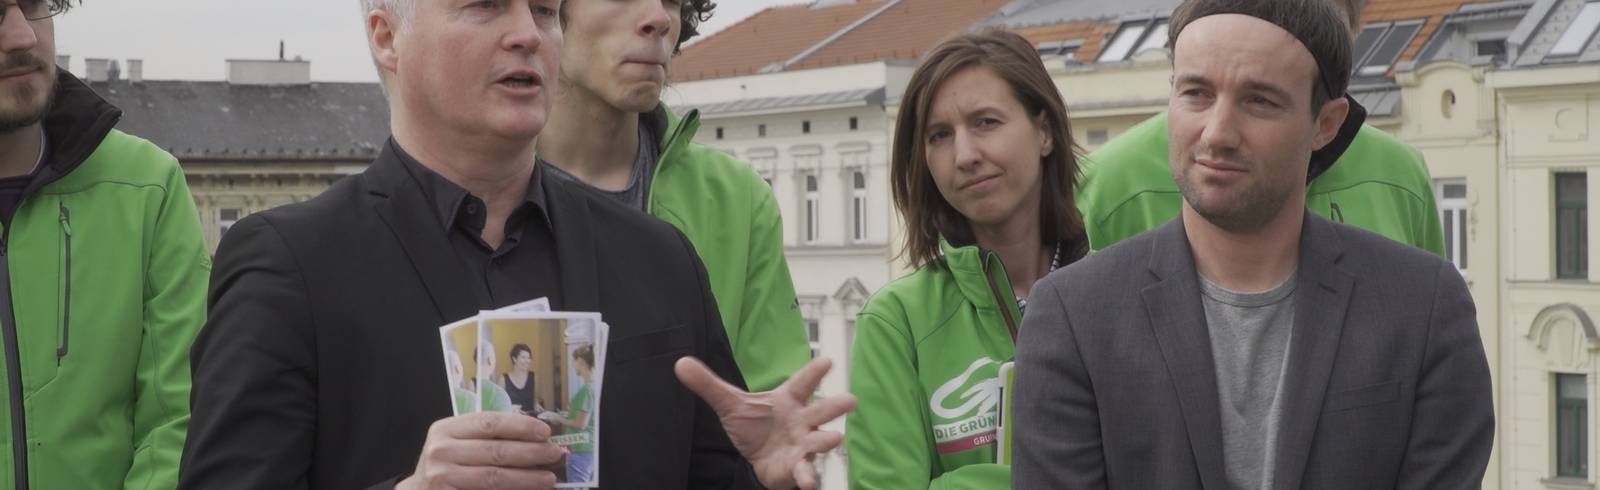 Wiener Grüne wollen Wähler zurückerobern